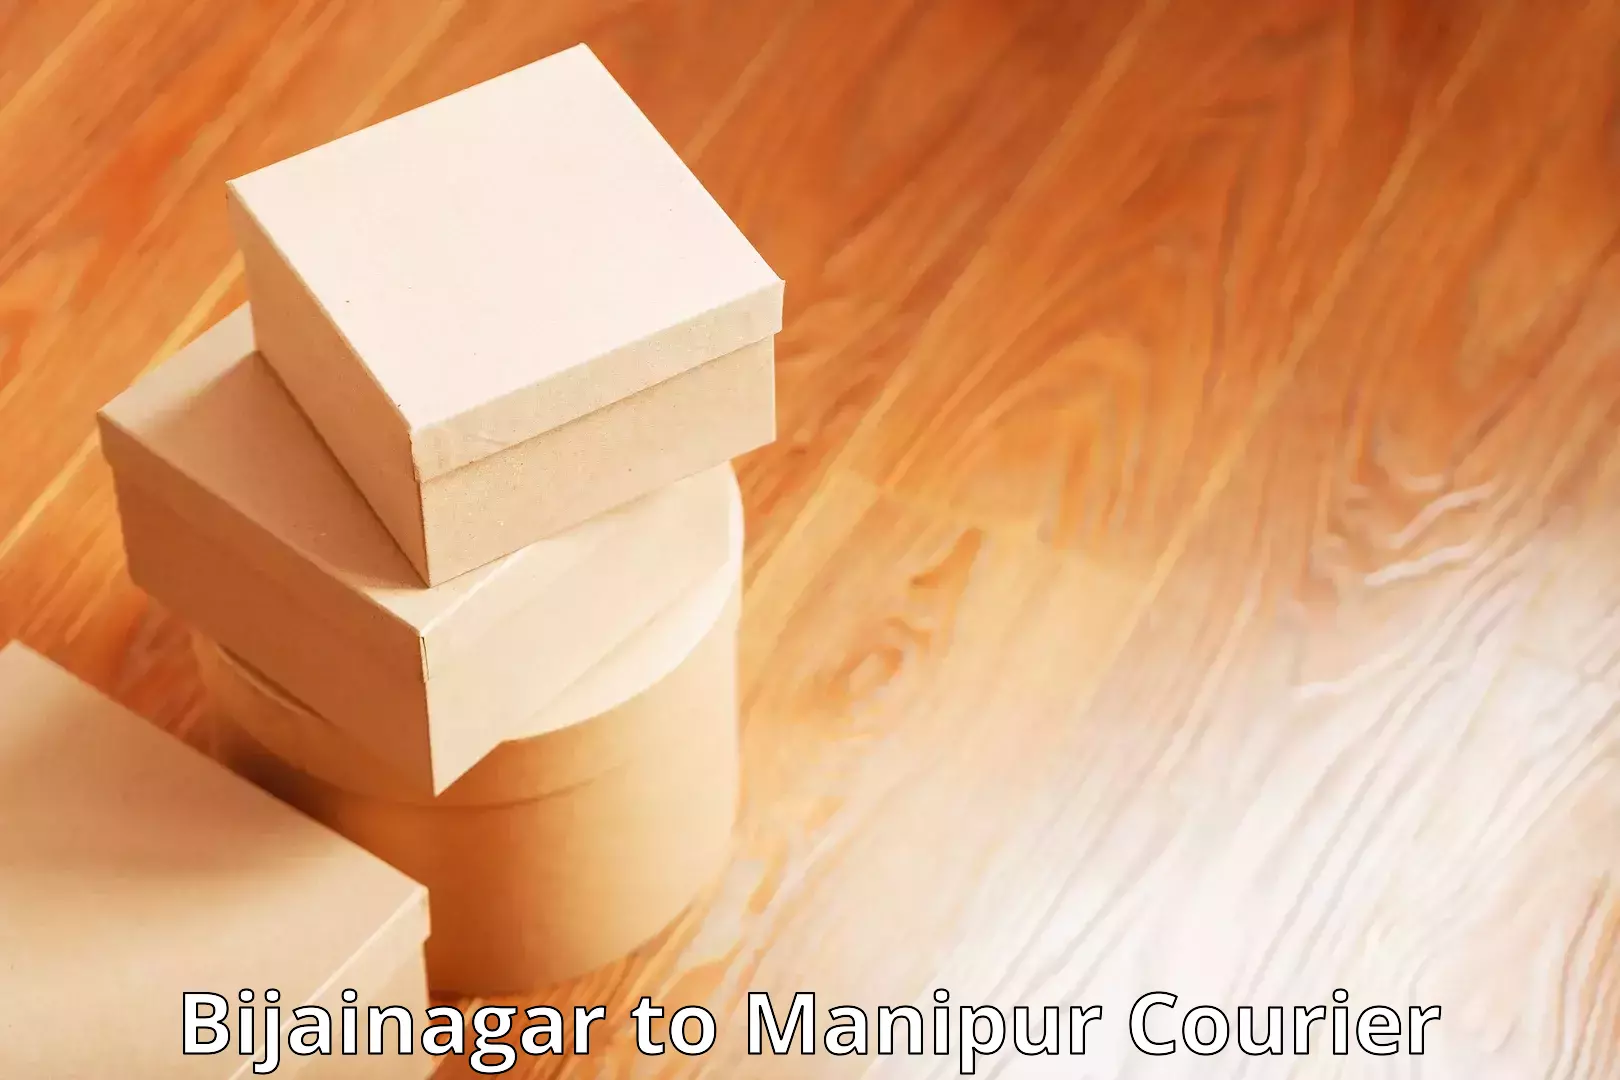 Personal courier services Bijainagar to Moirang